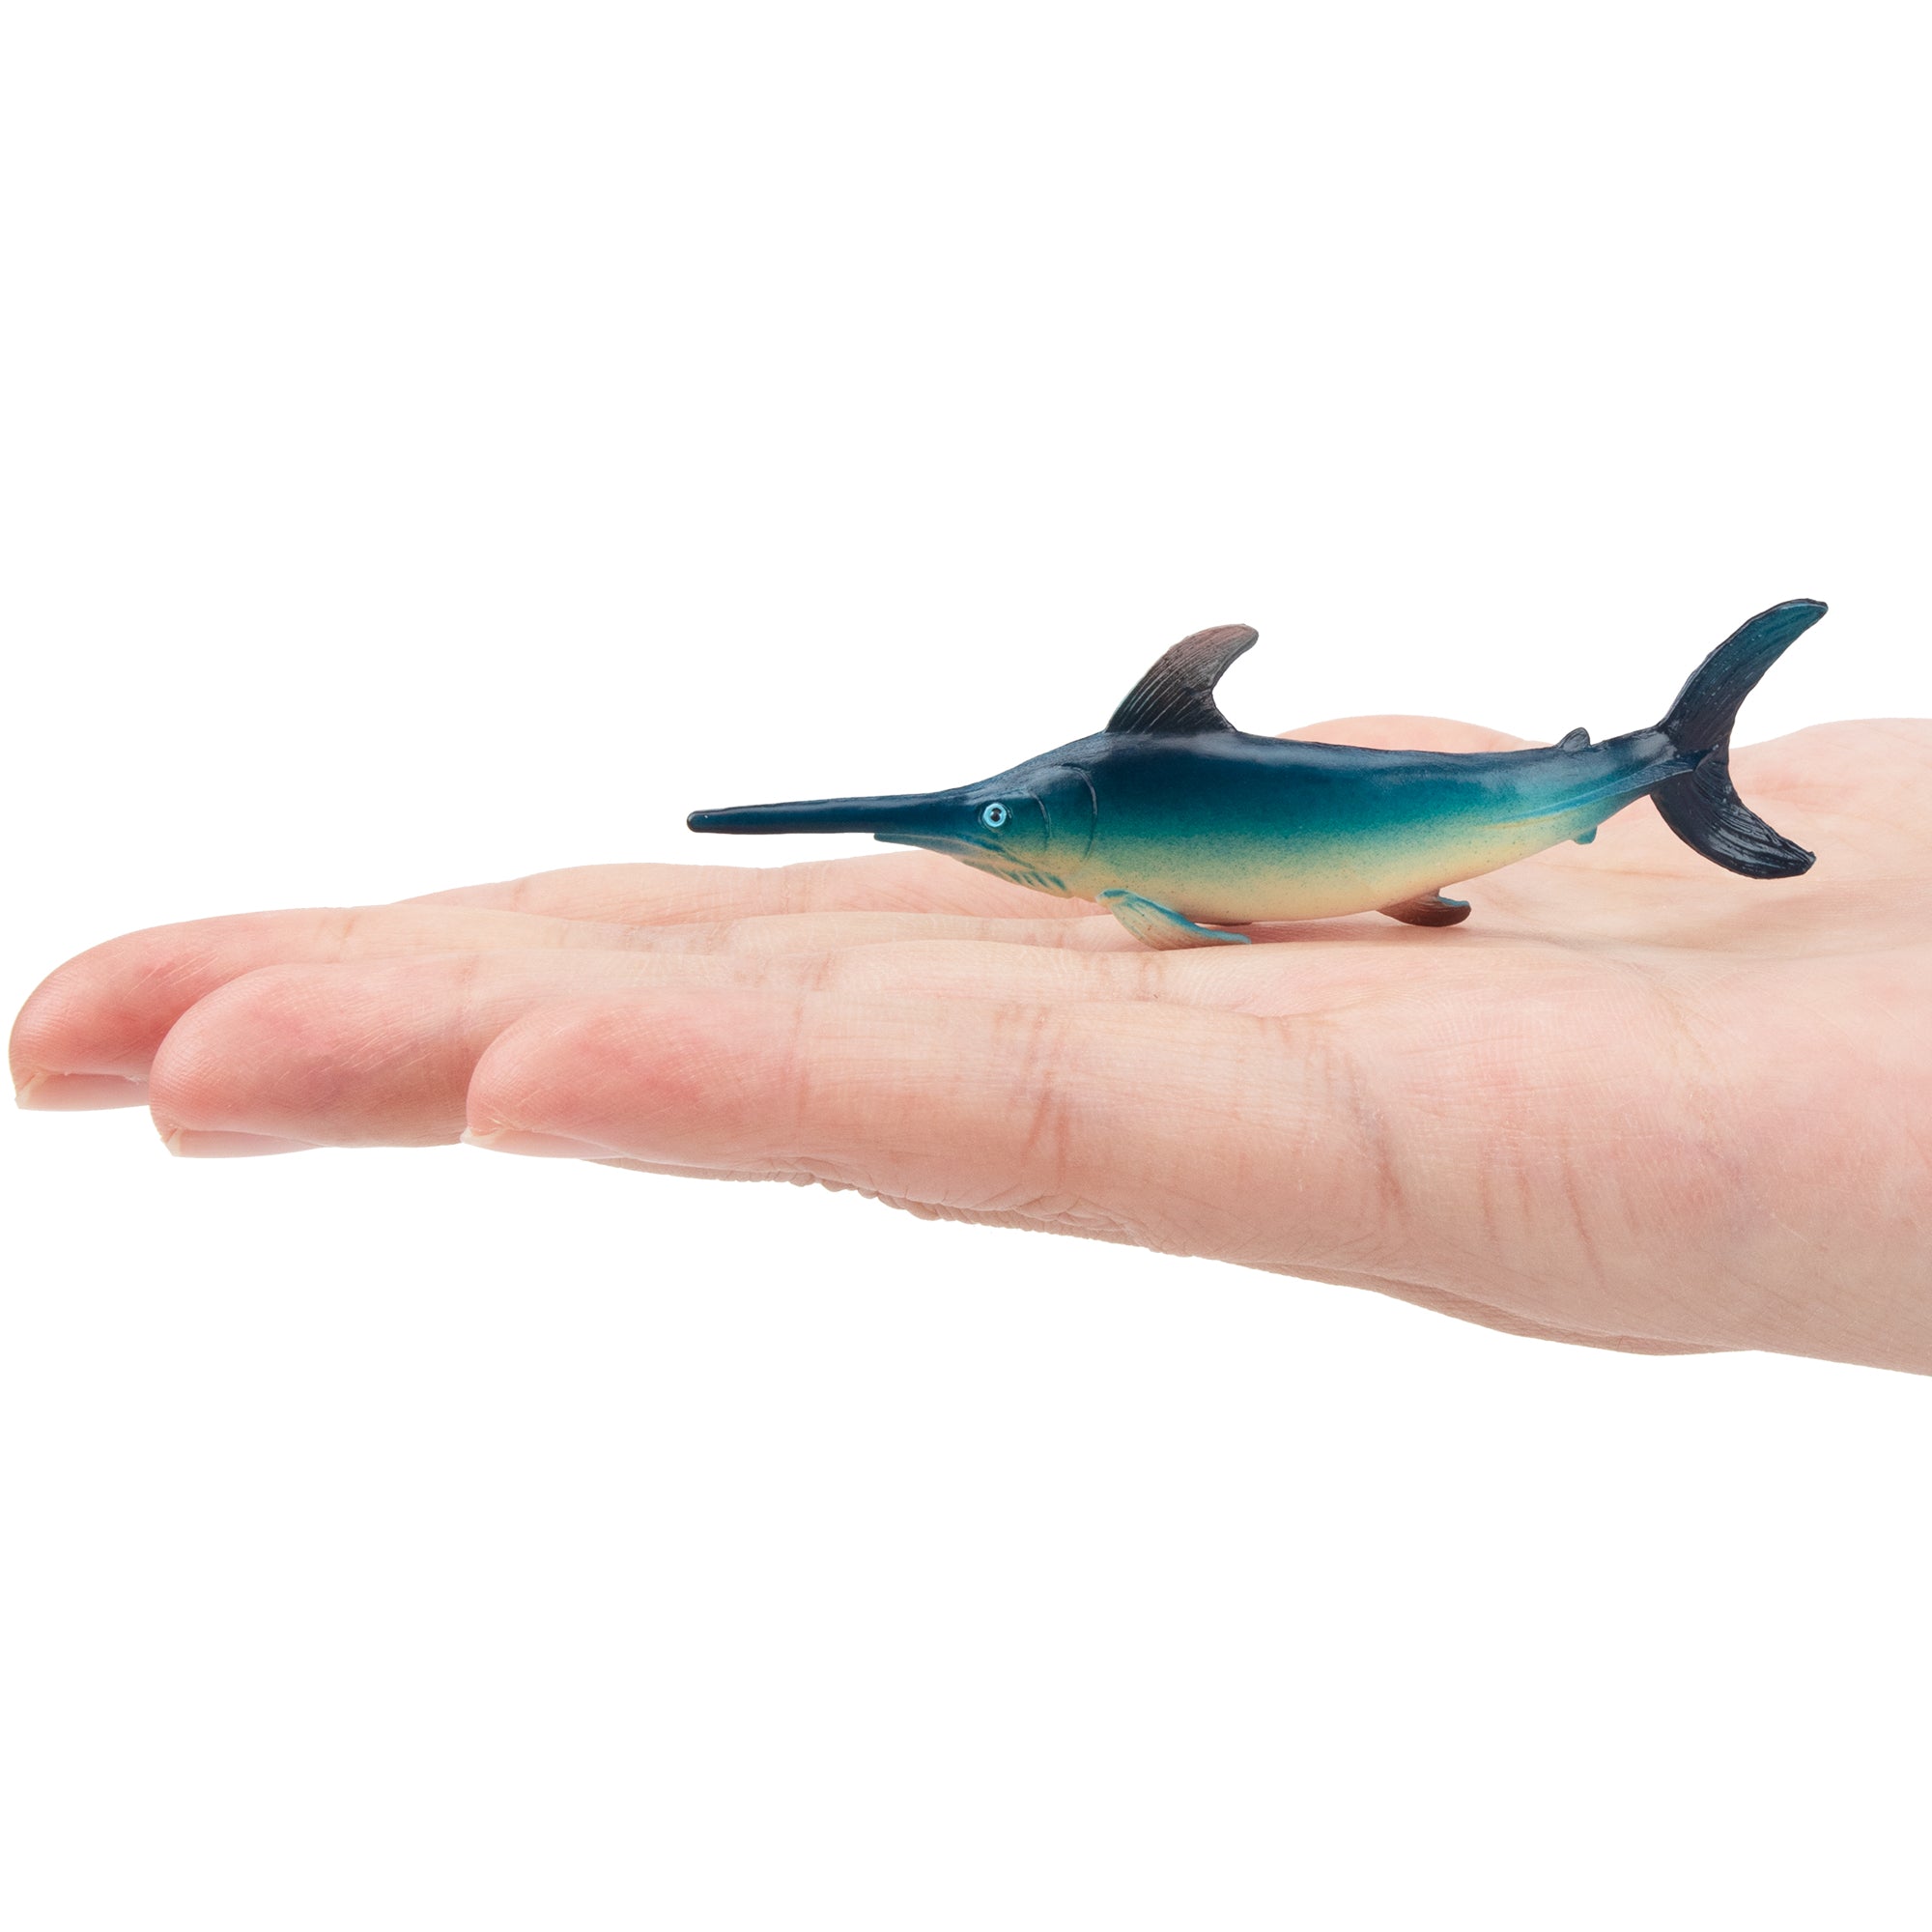 Toymany Swordfish Figurine Toy-on hand